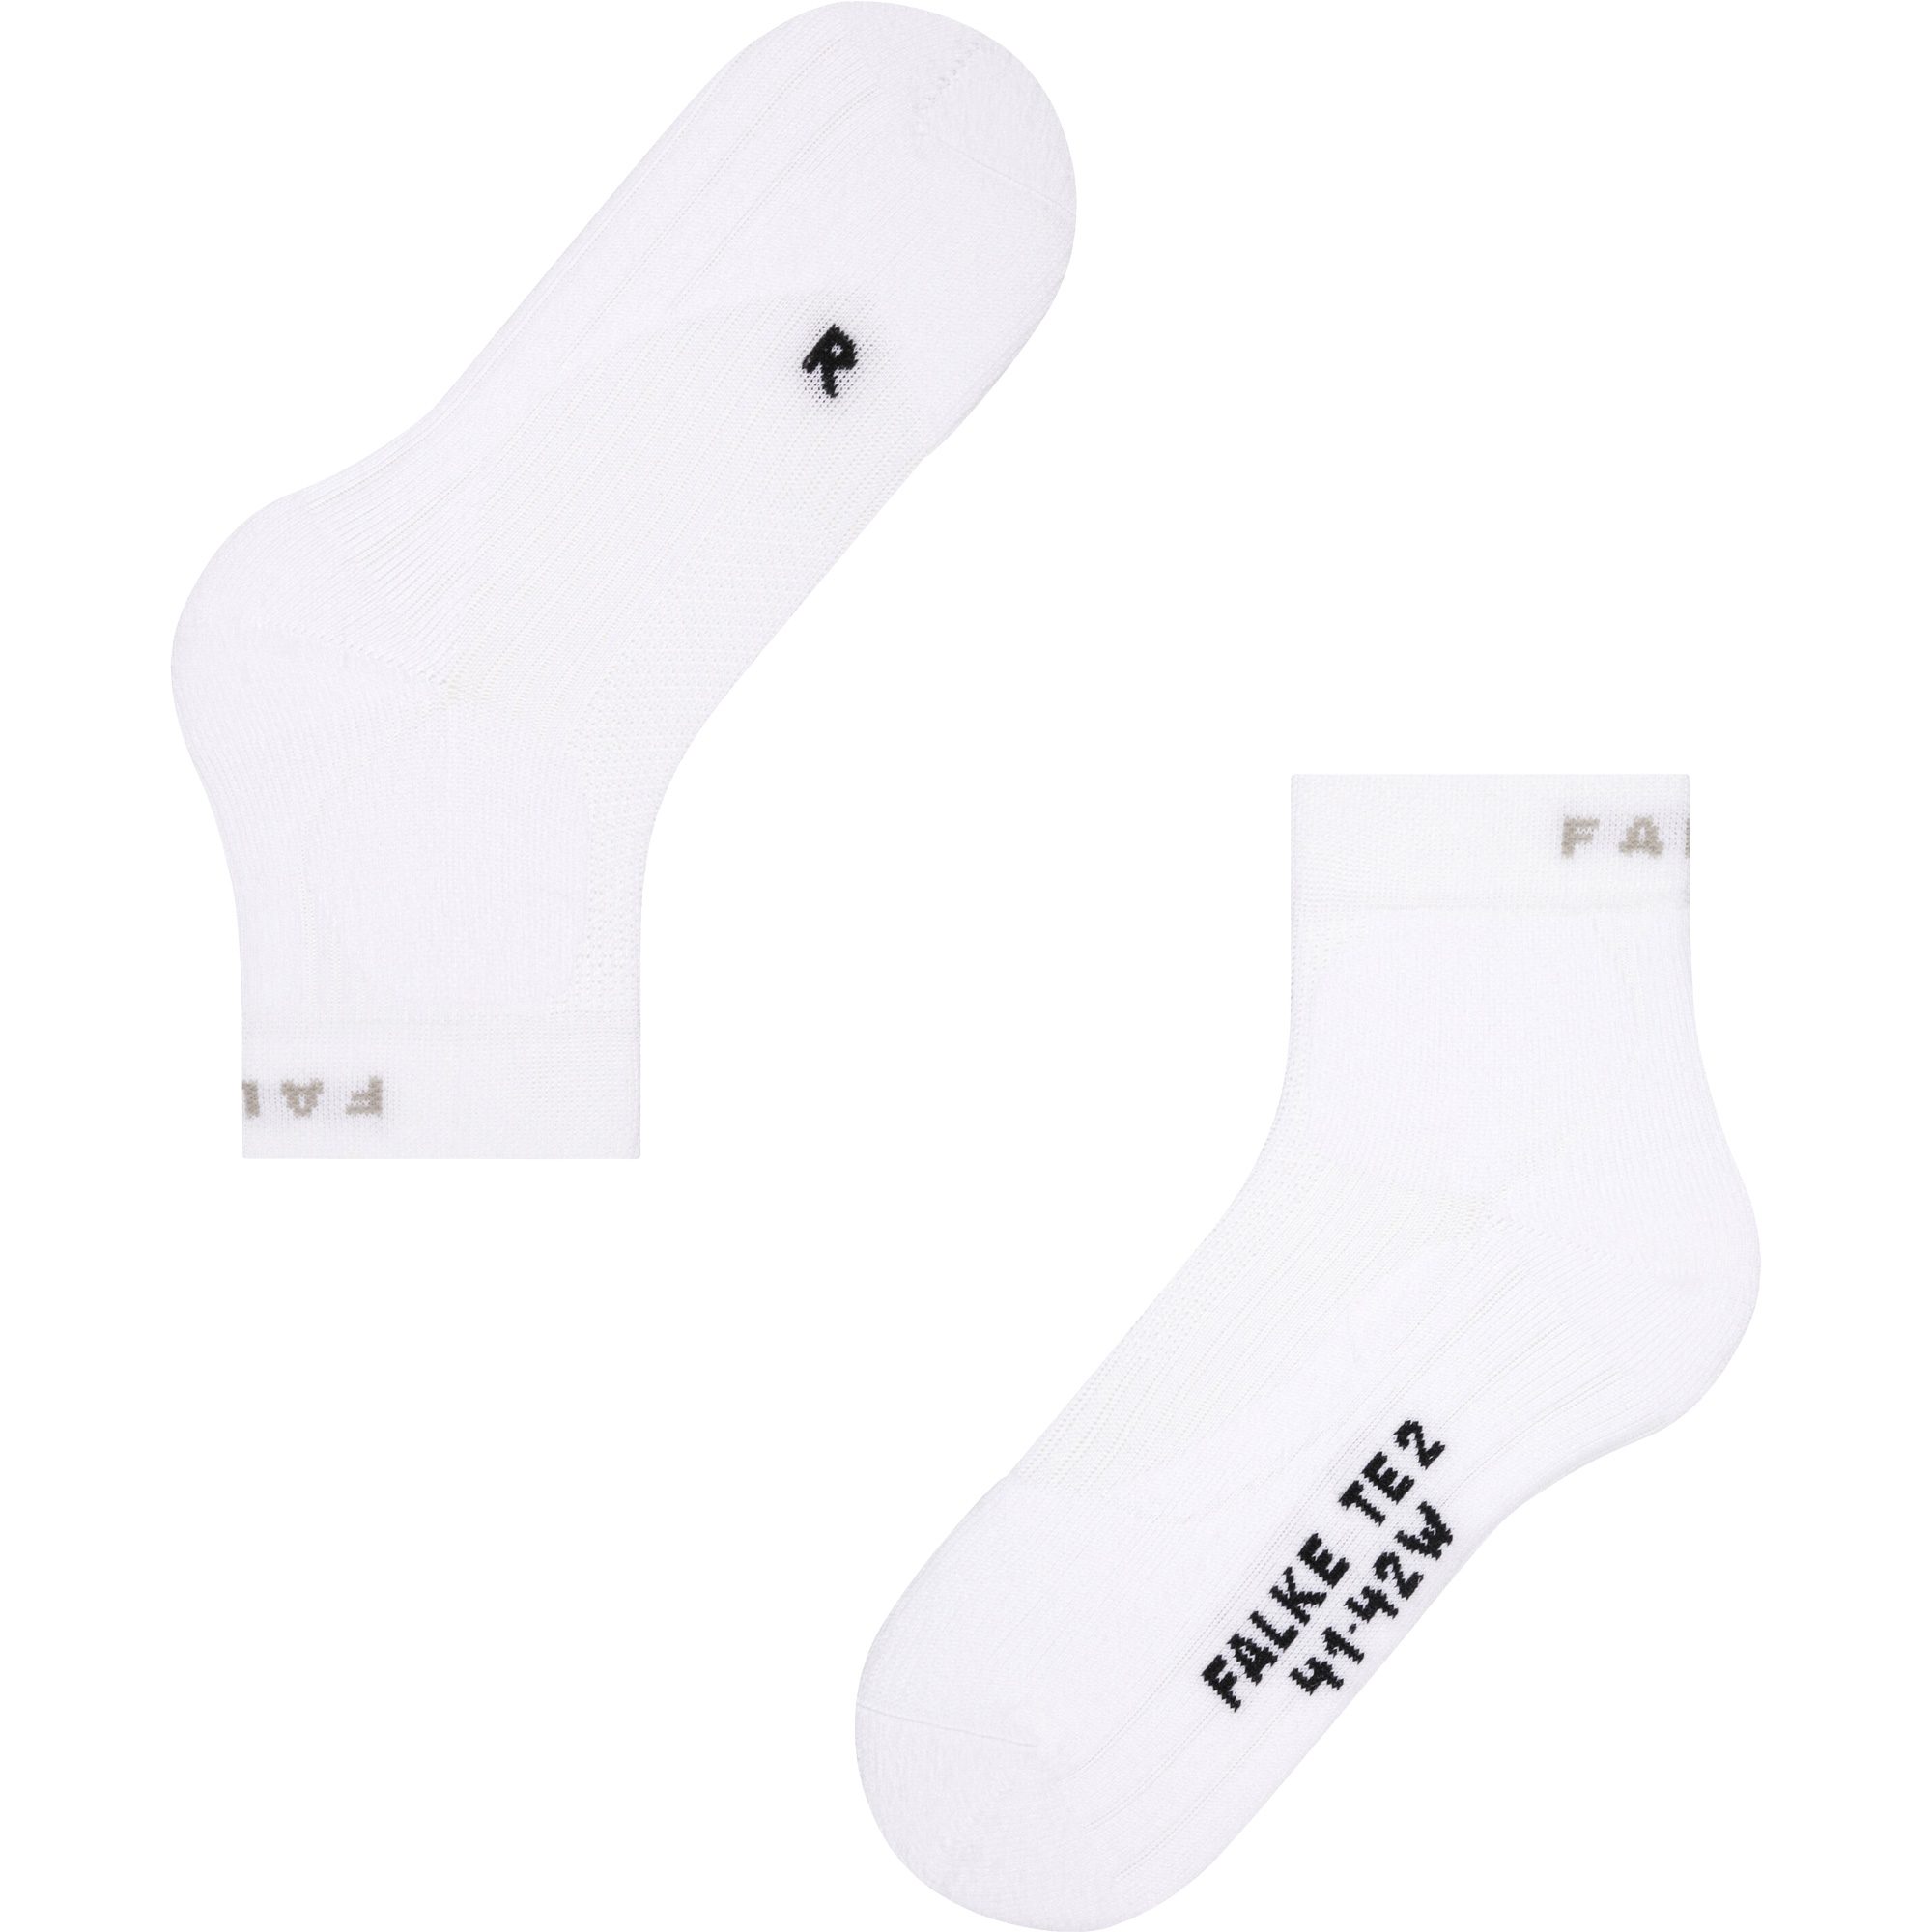 TE2 Socken Damen weiß